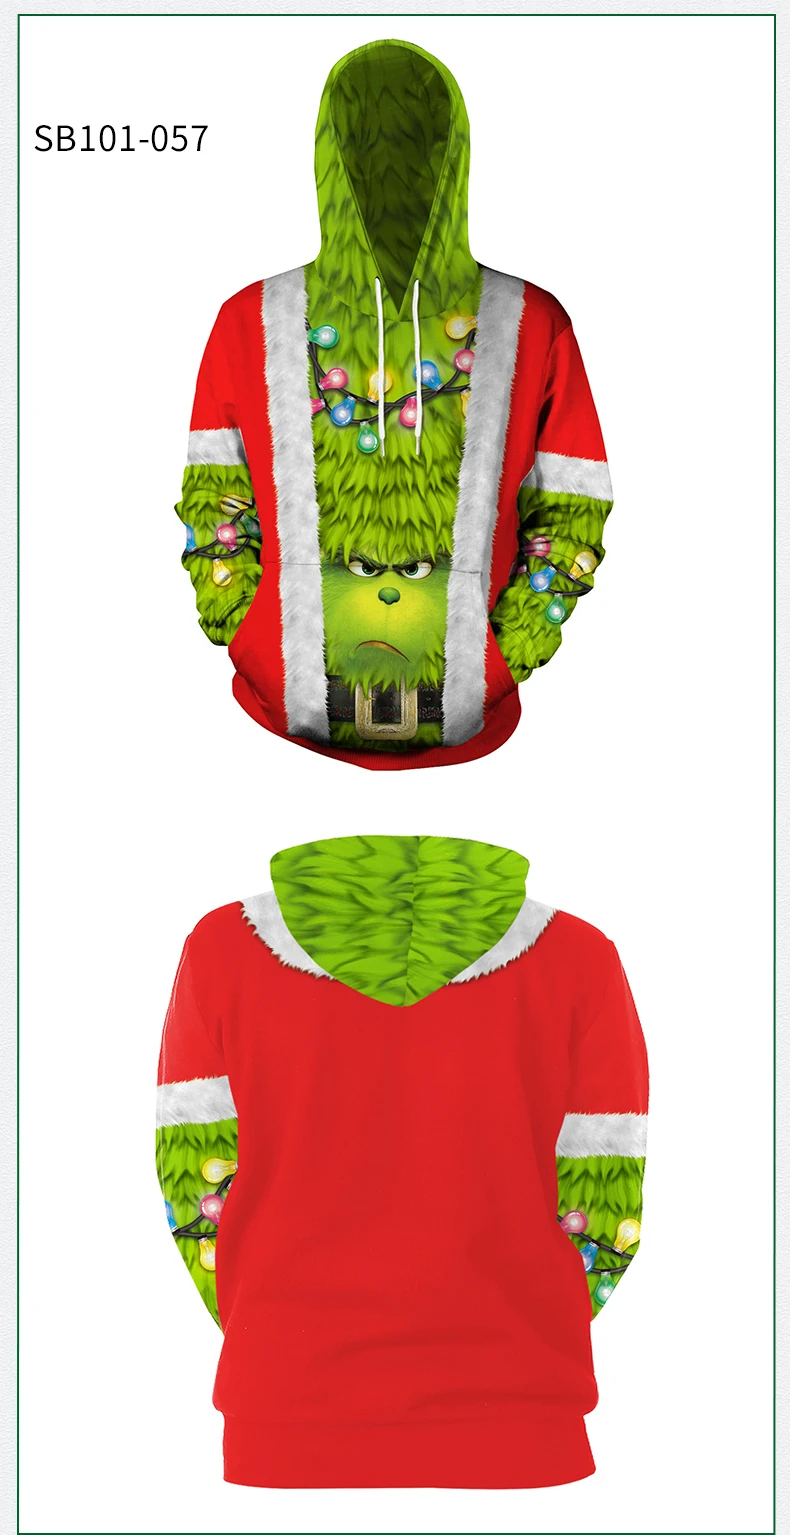 VIP fashnhion забавные толстовки с 3d принтом «веселое Рождество», модные пуловеры с капюшоном, уличная одежда, Рождественские толстовки с капюшоном в стиле аниме